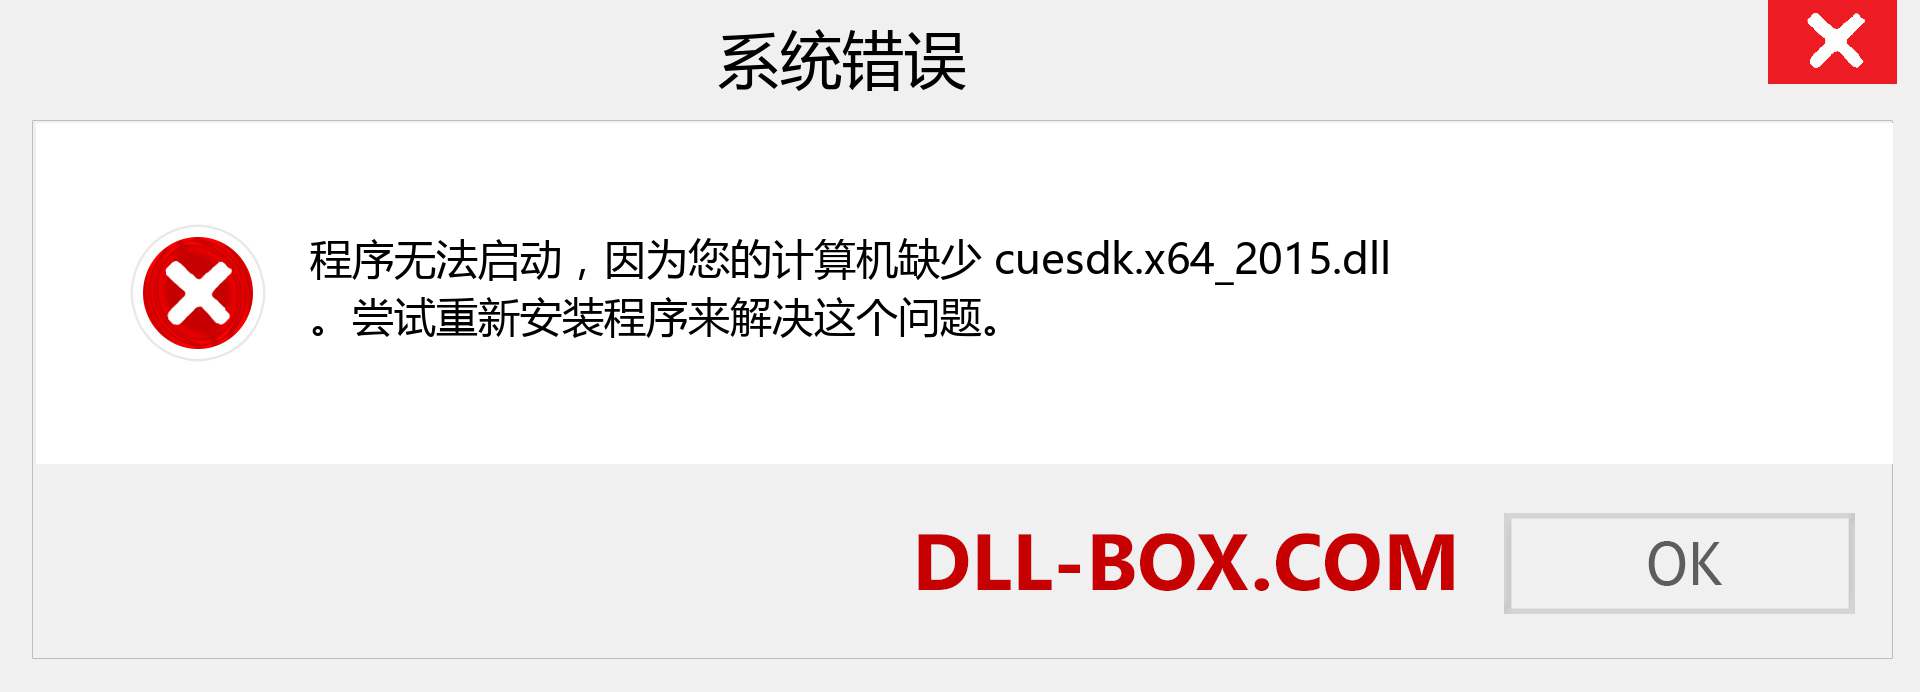 cuesdk.x64_2015.dll 文件丢失？。 适用于 Windows 7、8、10 的下载 - 修复 Windows、照片、图像上的 cuesdk.x64_2015 dll 丢失错误